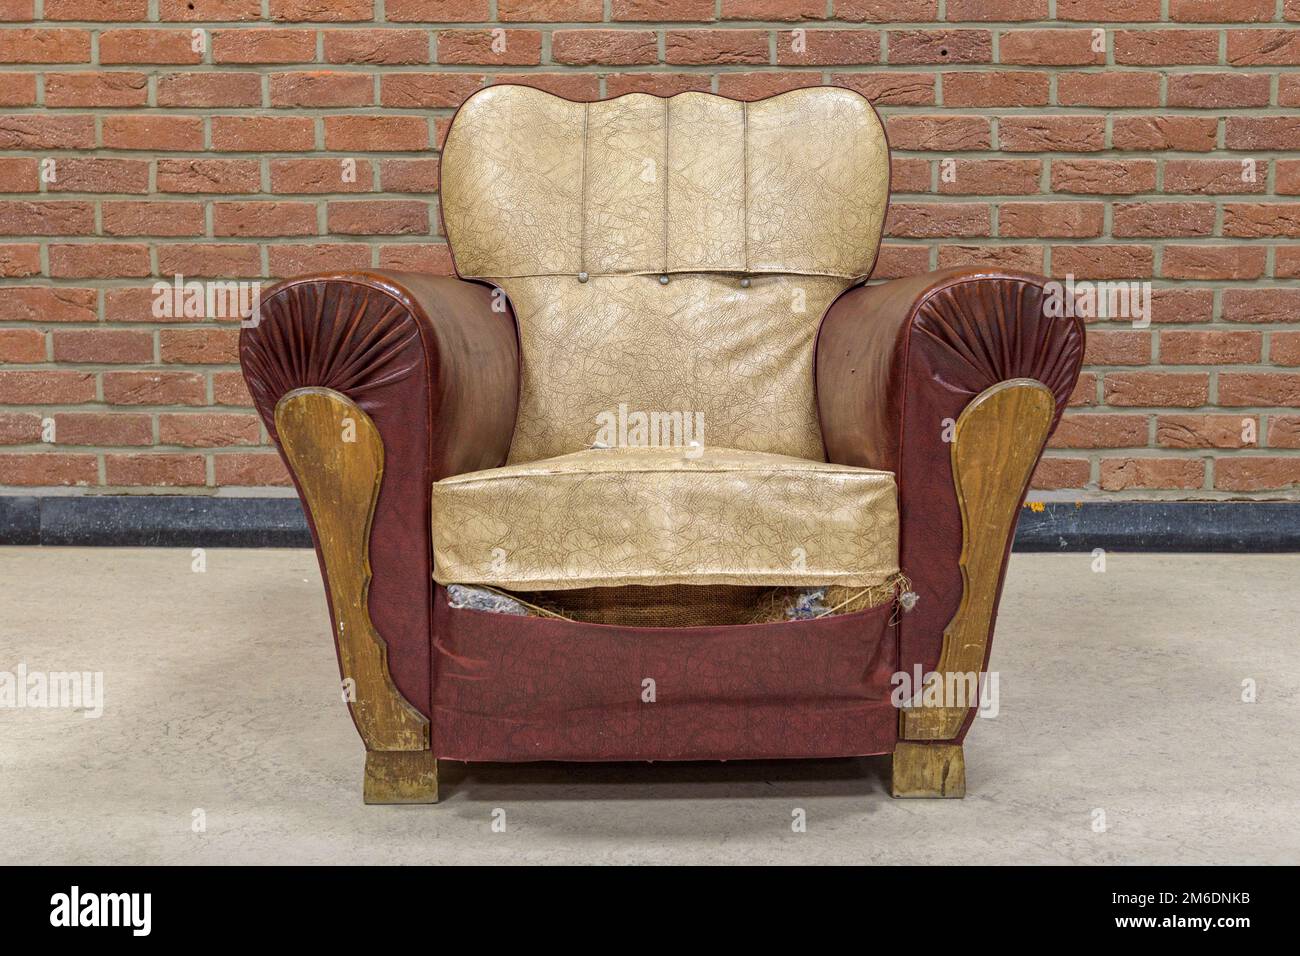 Un sillón con viejos rastros de tiempo contra una pared de ladrillo. formato cuadrado Foto de stock